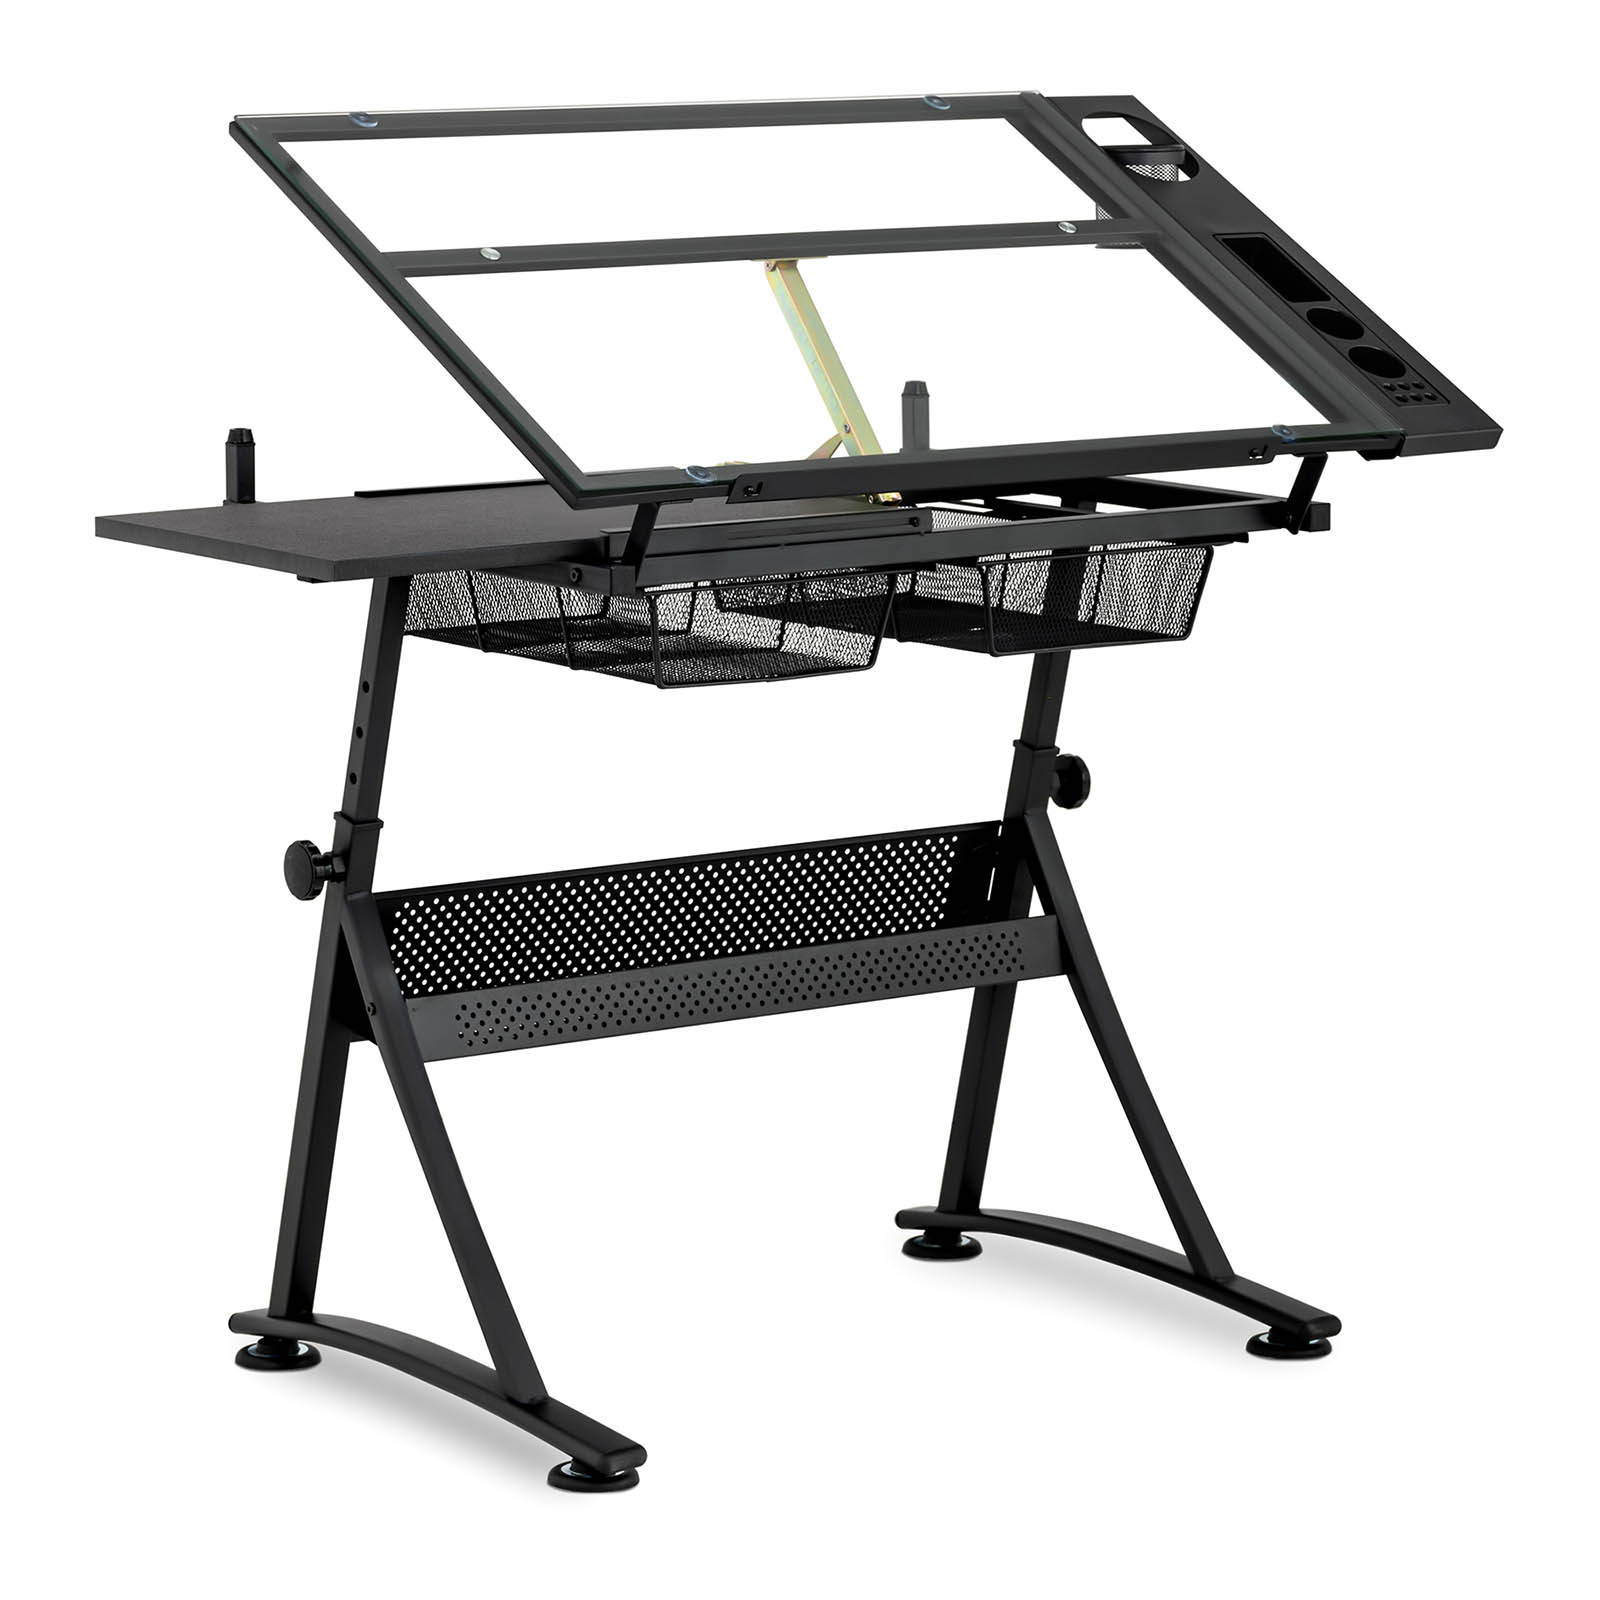 Table à dessin inclinable - 120 x 60 x 90 cm - Plateau en verre